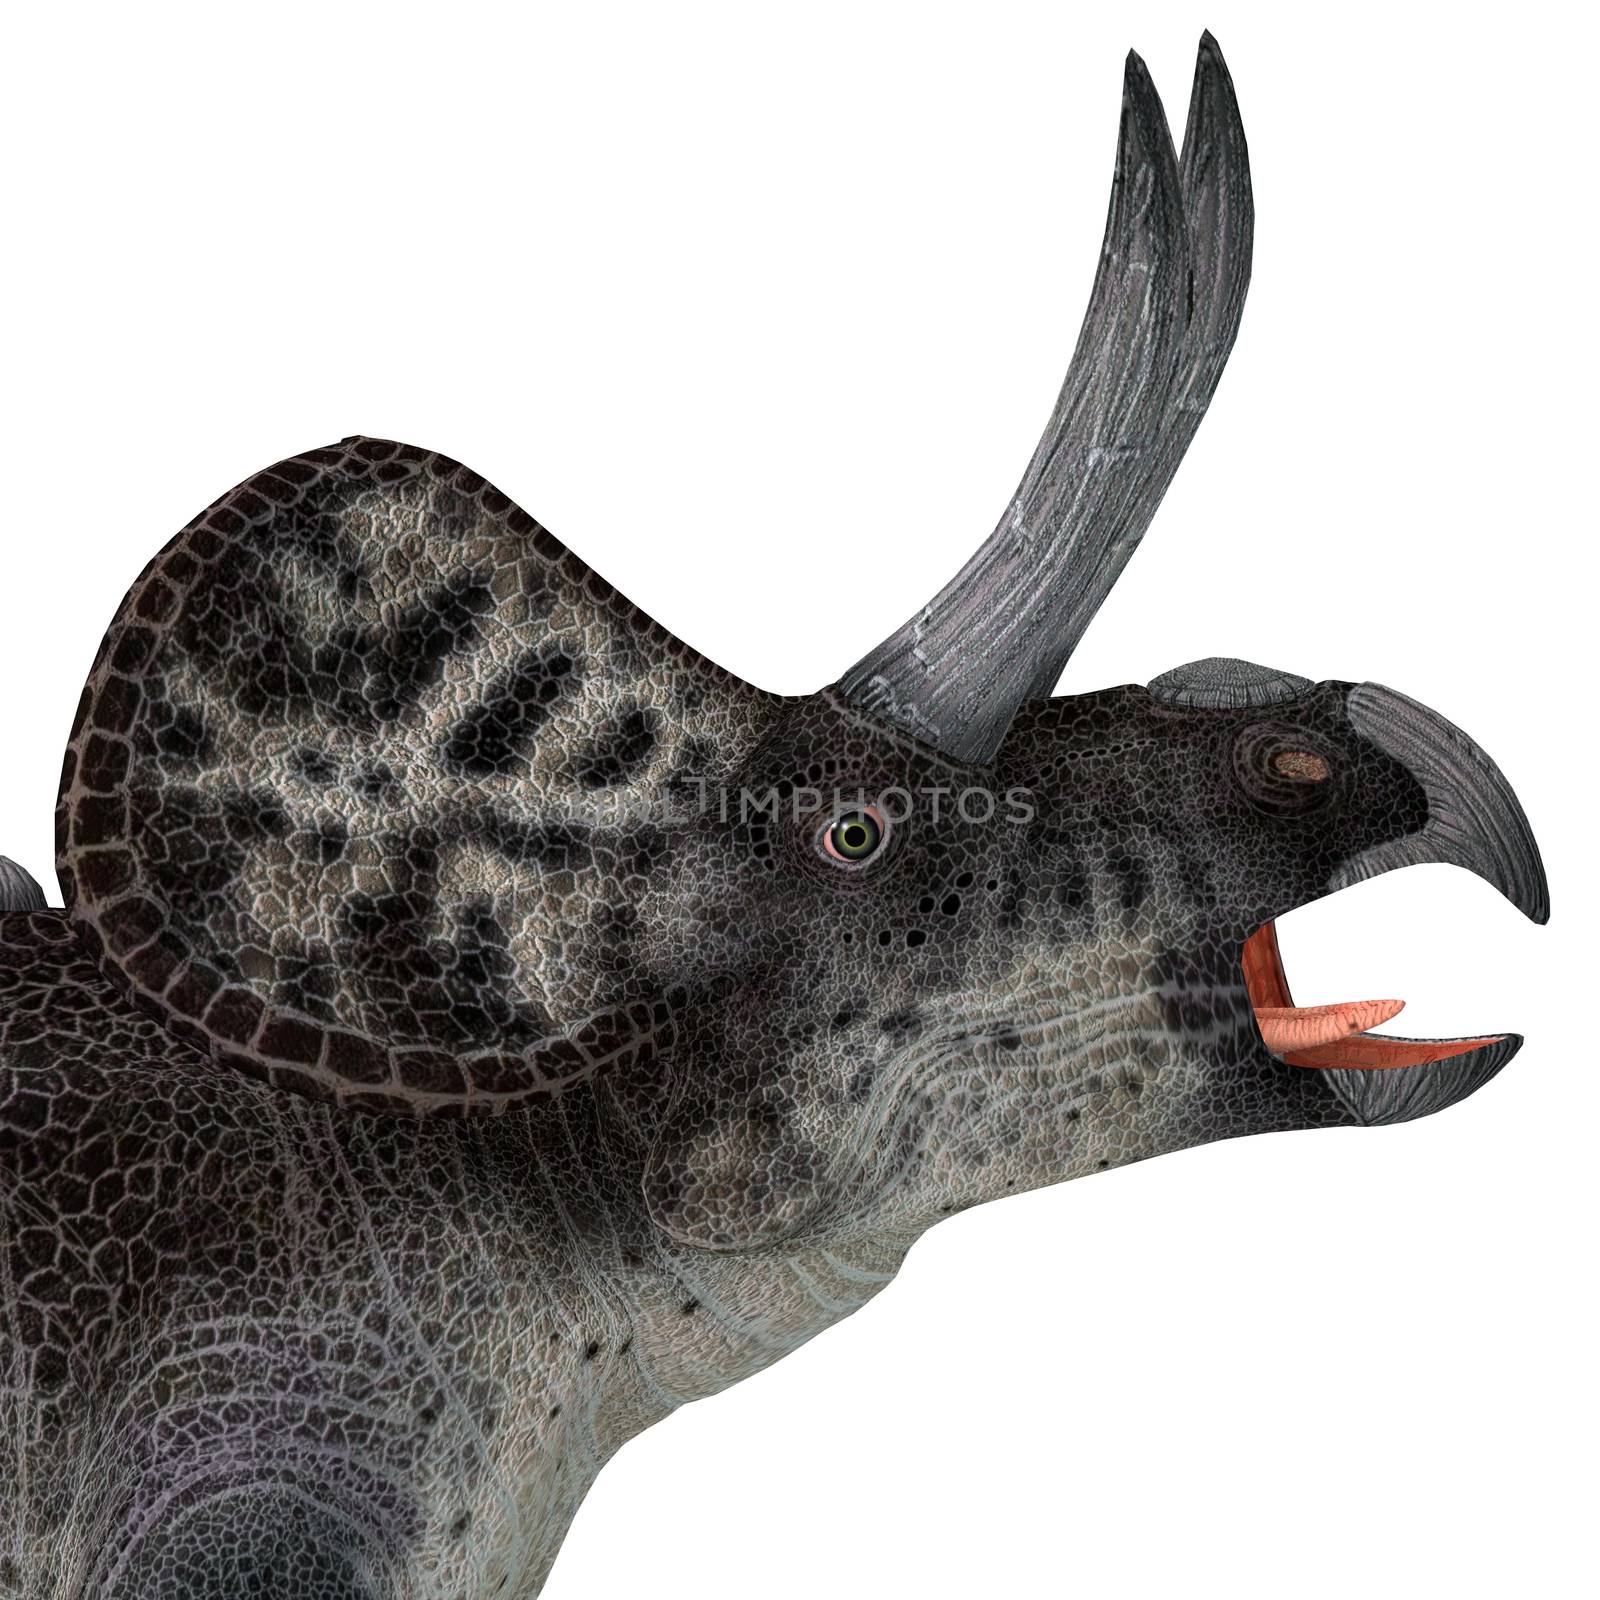 Zuniceratops Dinosaur Head by Catmando